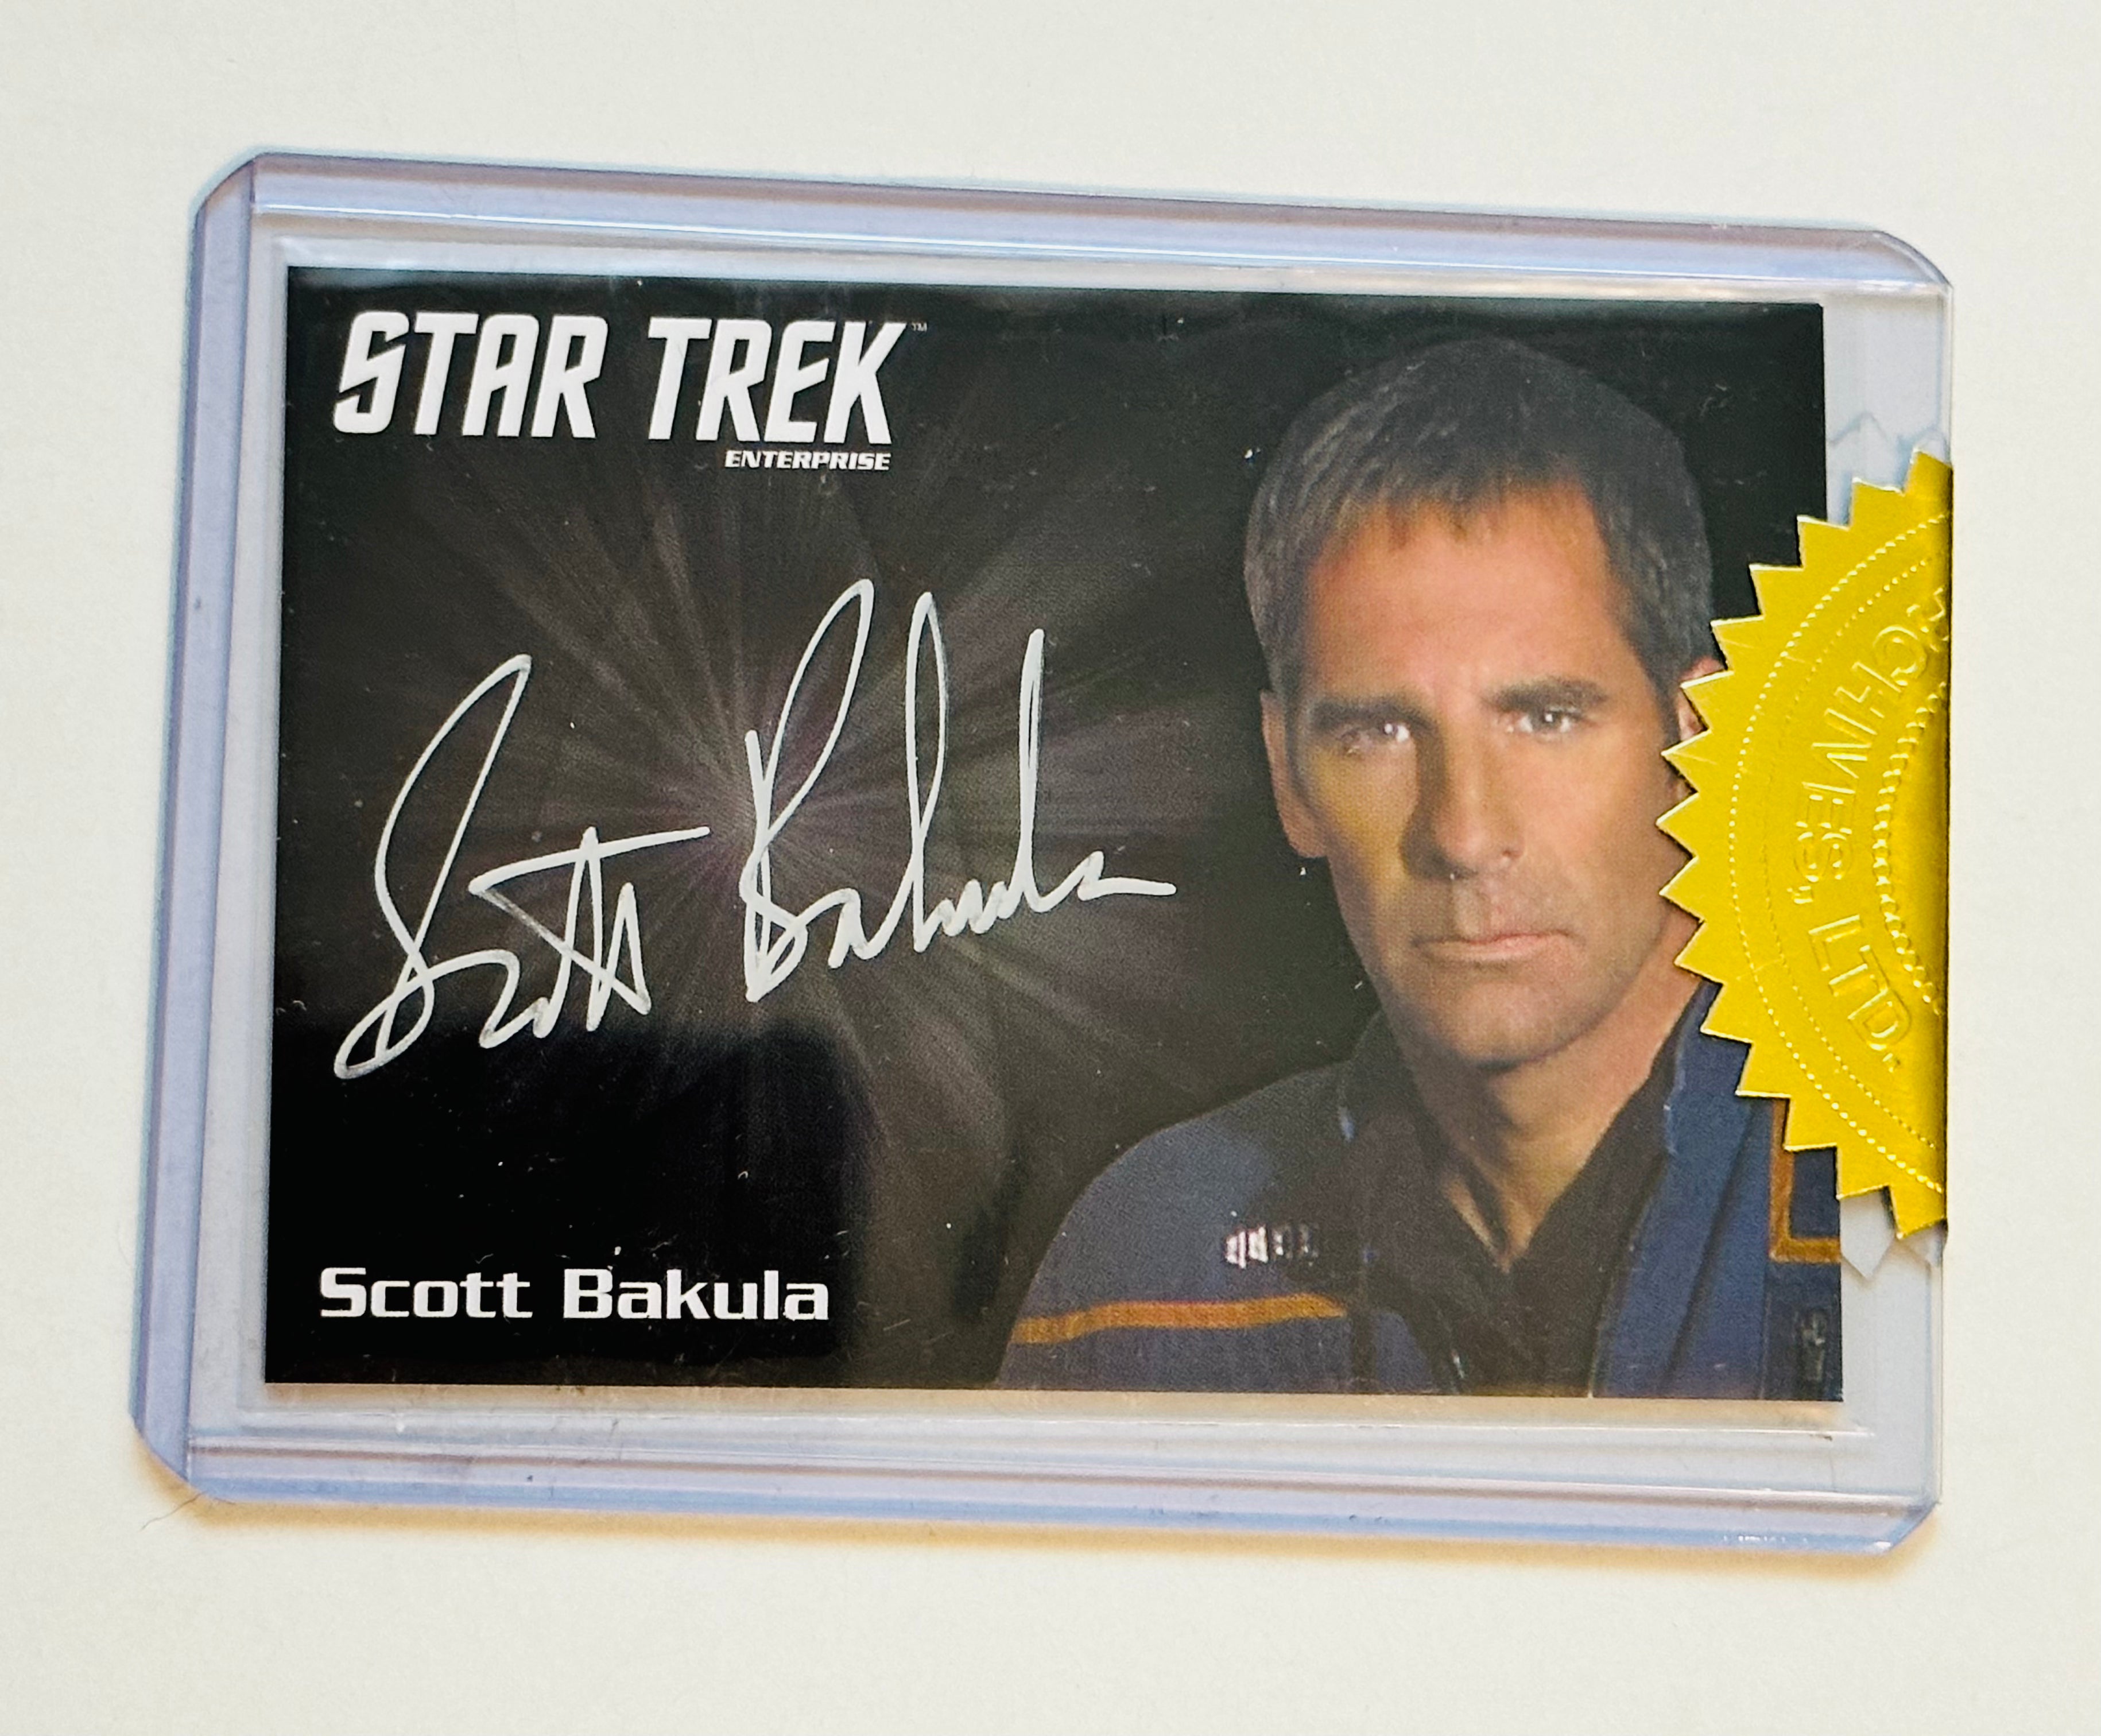 Star Trek Scott Bakula rare autograph insert card certified